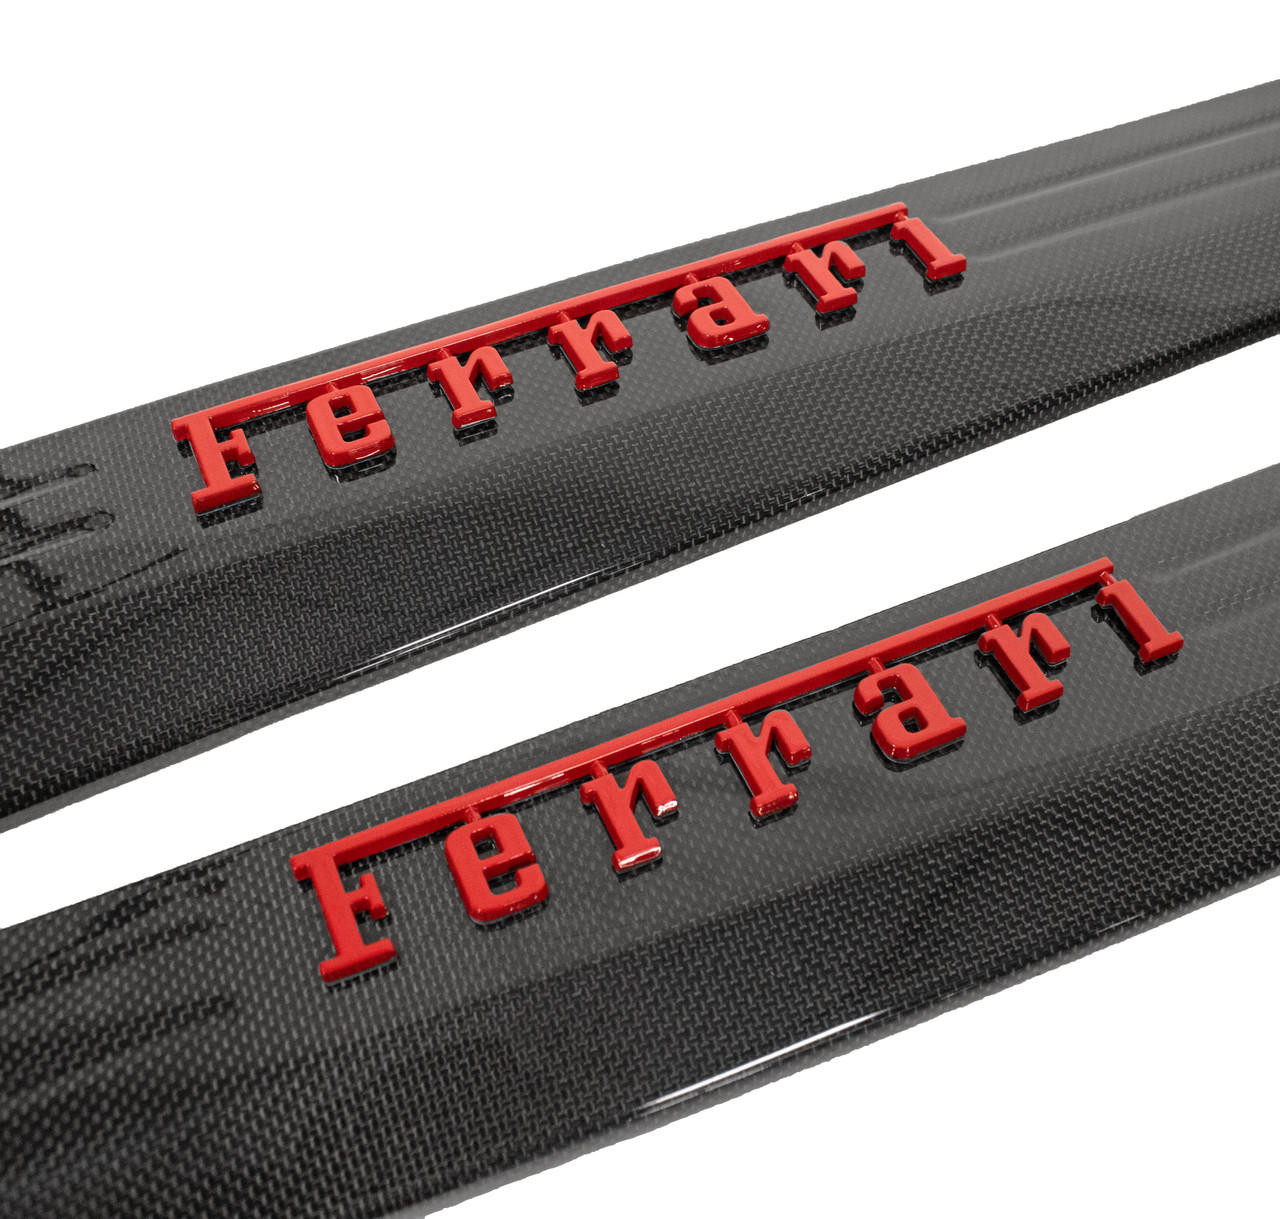 Fabspeed Carbon Fiber Door Sills with RED Raised Ferrari Script - Ferrari 458 Italia/Spider